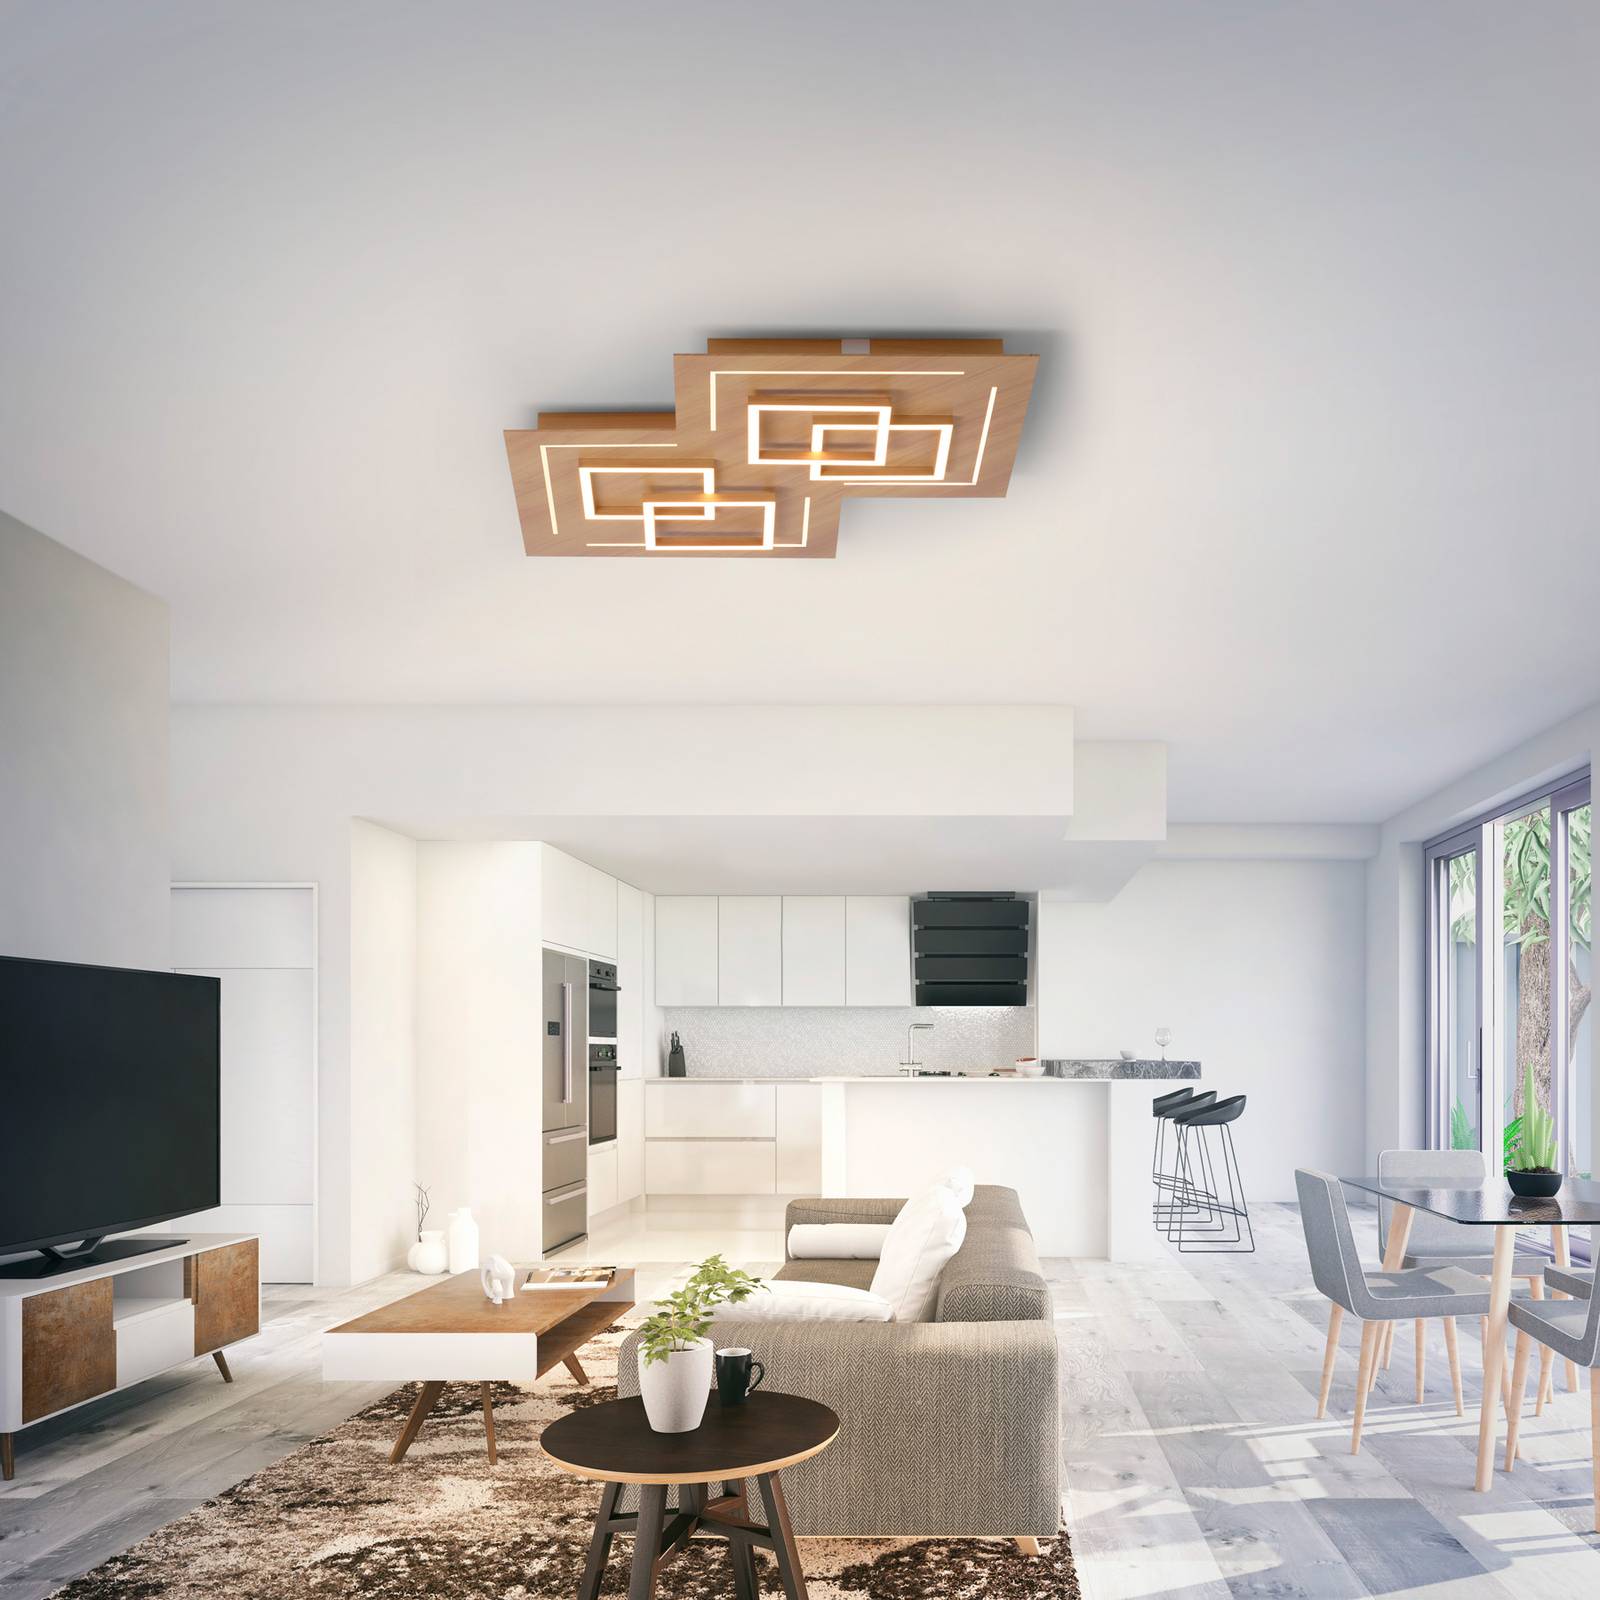 Image of Q-Smart-Home Paul Neuhaus Q-LINEA plafond LED décor bois 60cm 4012248352007